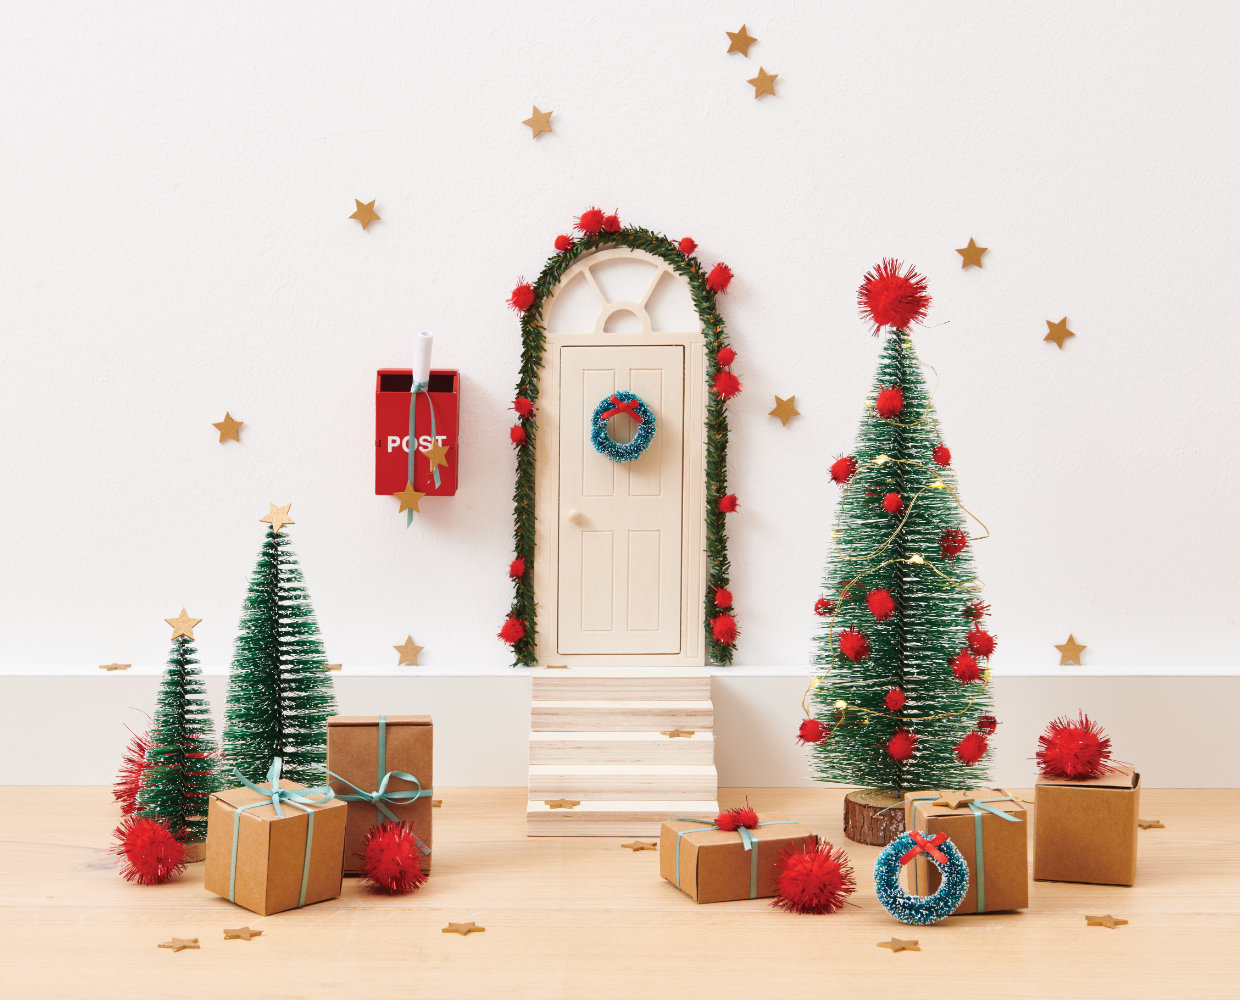 Weihnachtswichtel Tür: Jetzt gestalten und phantasievolle Geschichtern erzählen!